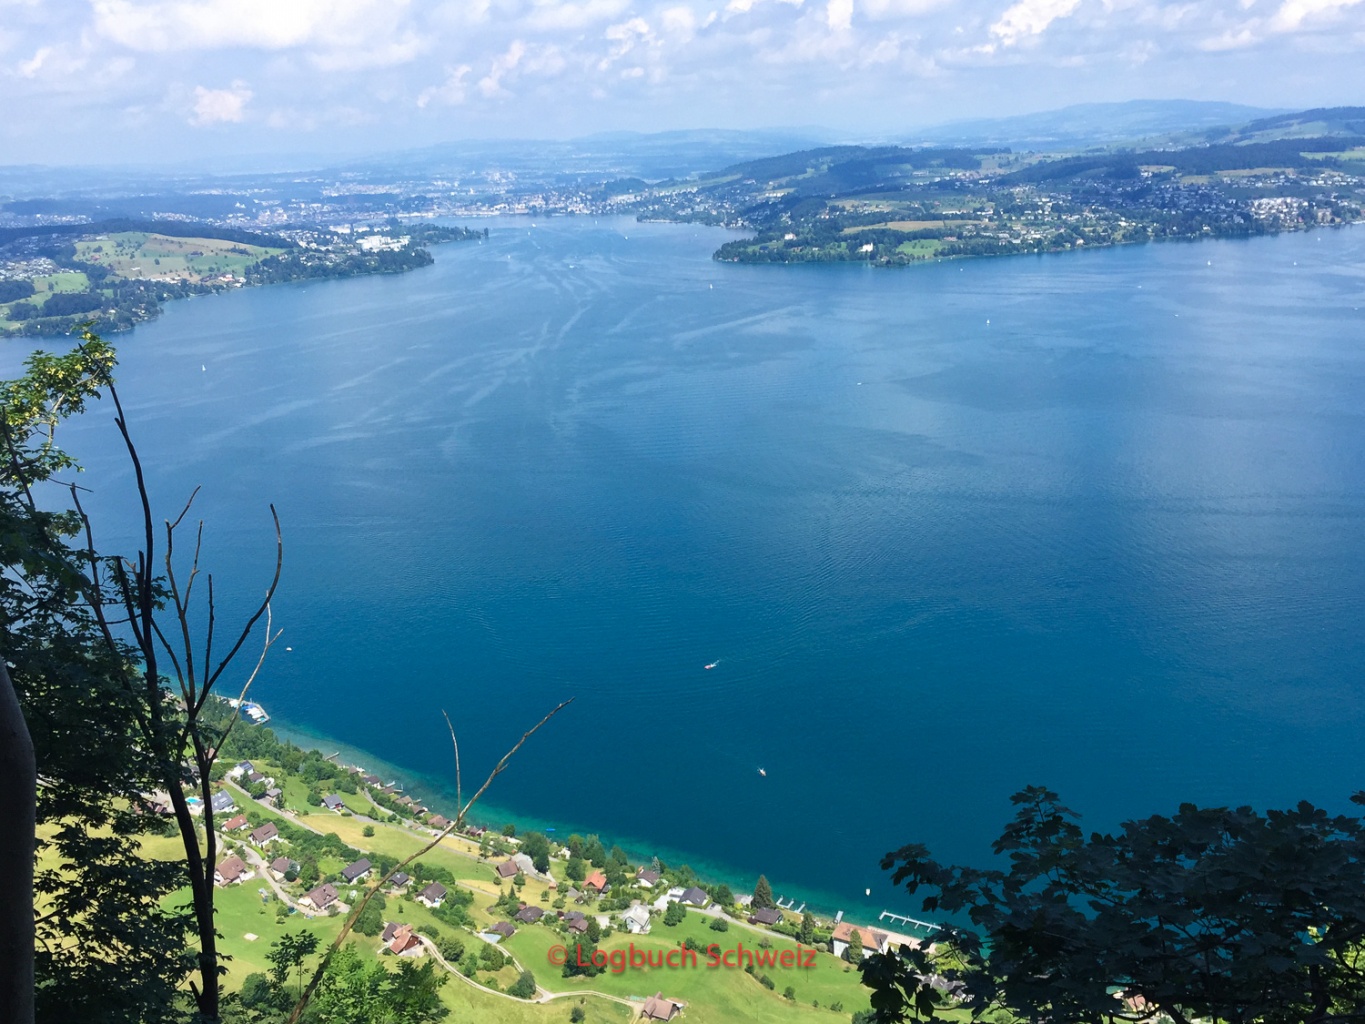 Luzern am Vierwaldstätter See